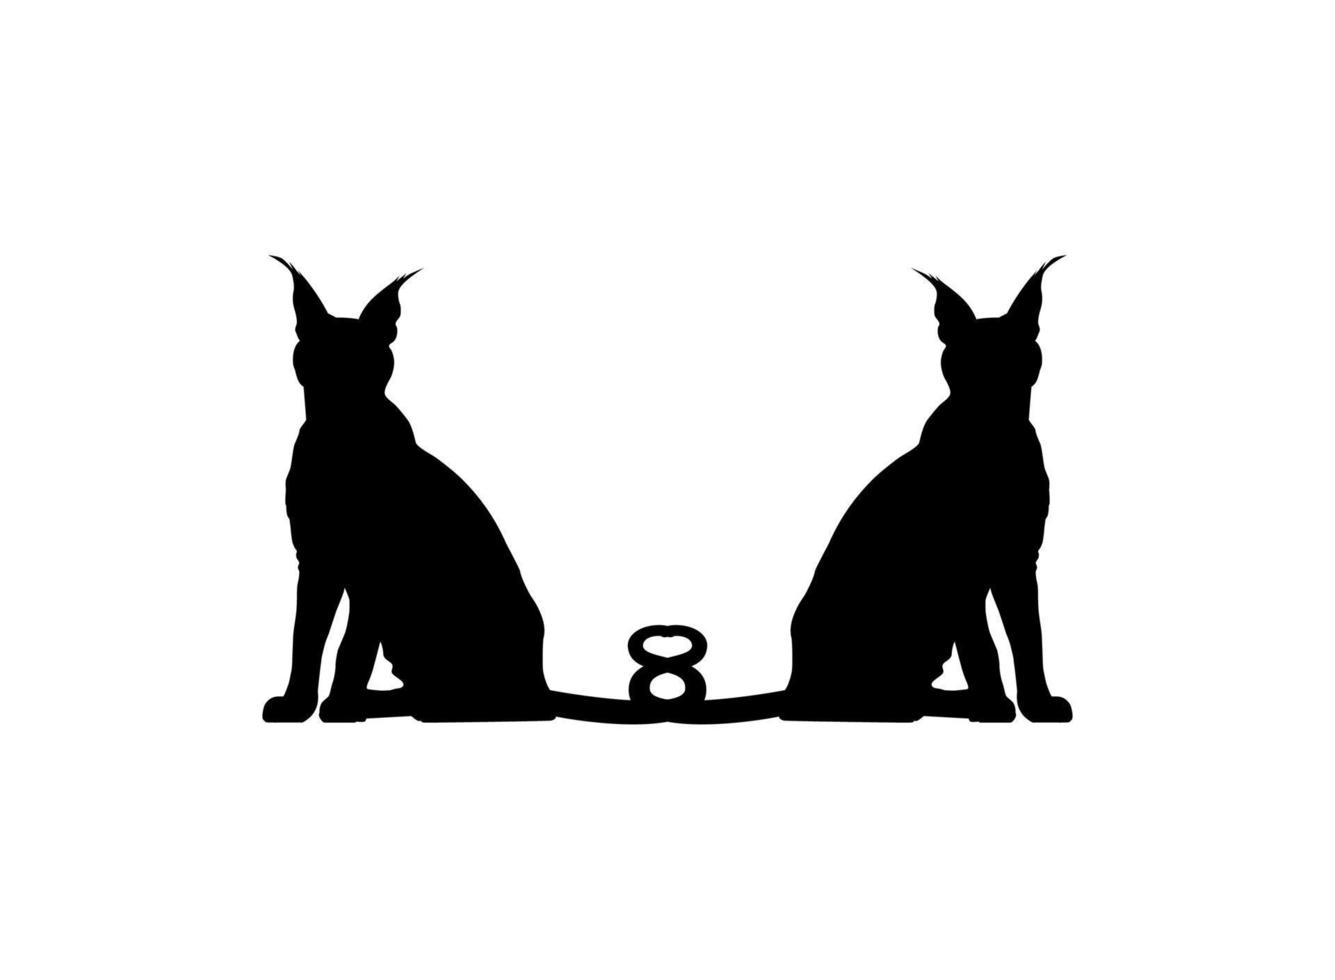 paire de la silhouette de chat caracal pour l'illustration d'art, le logo, le pictogramme, le site Web ou l'élément de conception graphique. illustration vectorielle vecteur